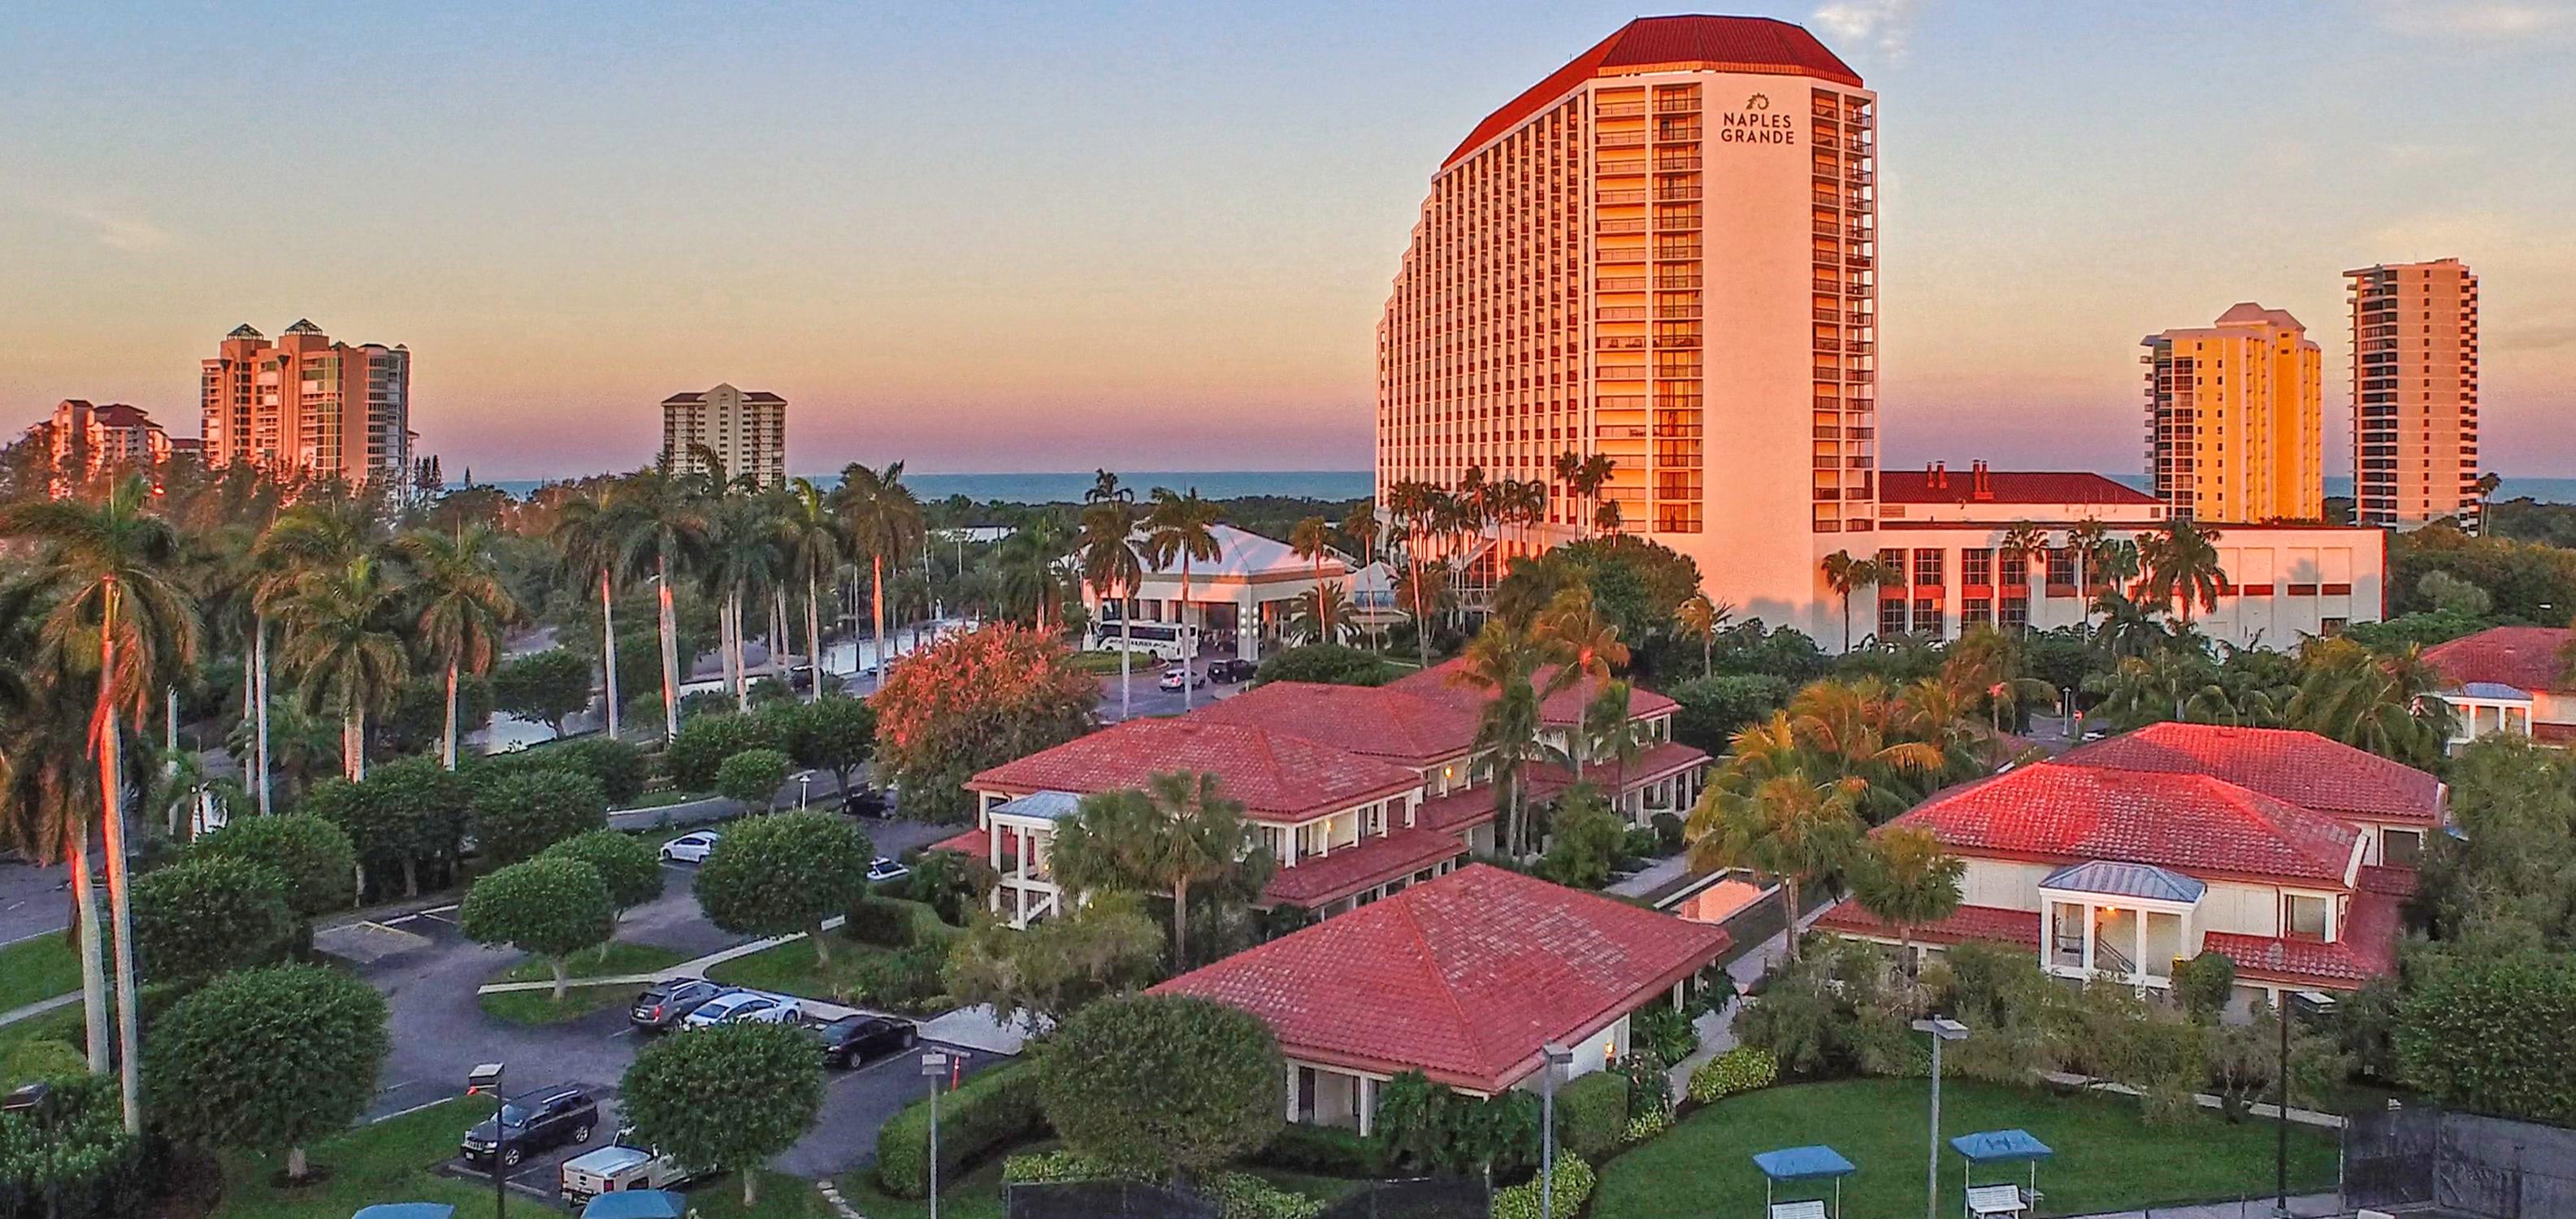 Florida, USA, Naples Grande Beach Resort